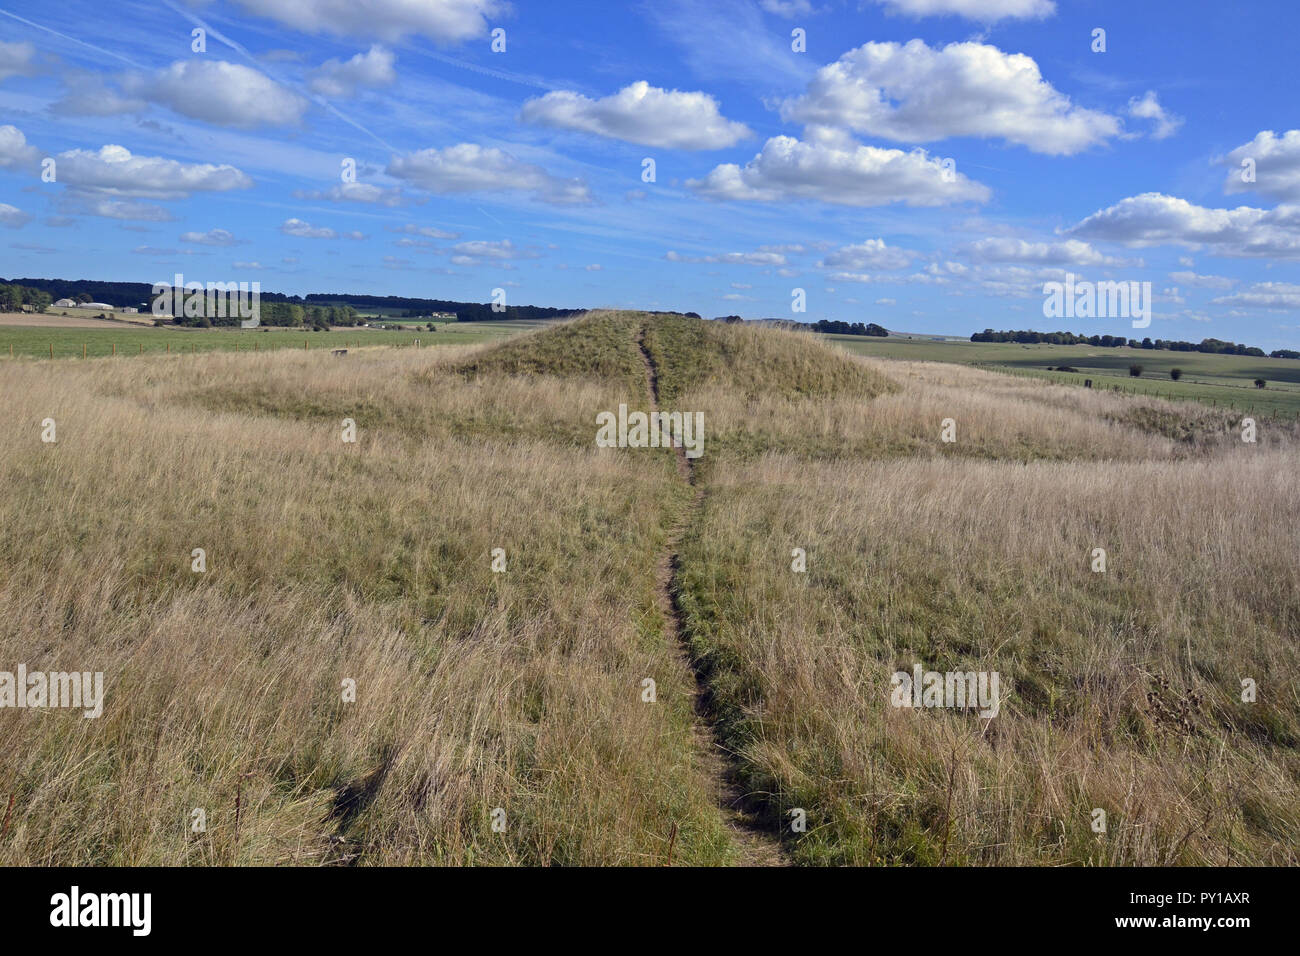 Cursus des castrats. Anciens tumulus funéraires ou à Stonehenge barrows cursus sur le paysage de Stonehenge, Wiltshire, England, UK Banque D'Images